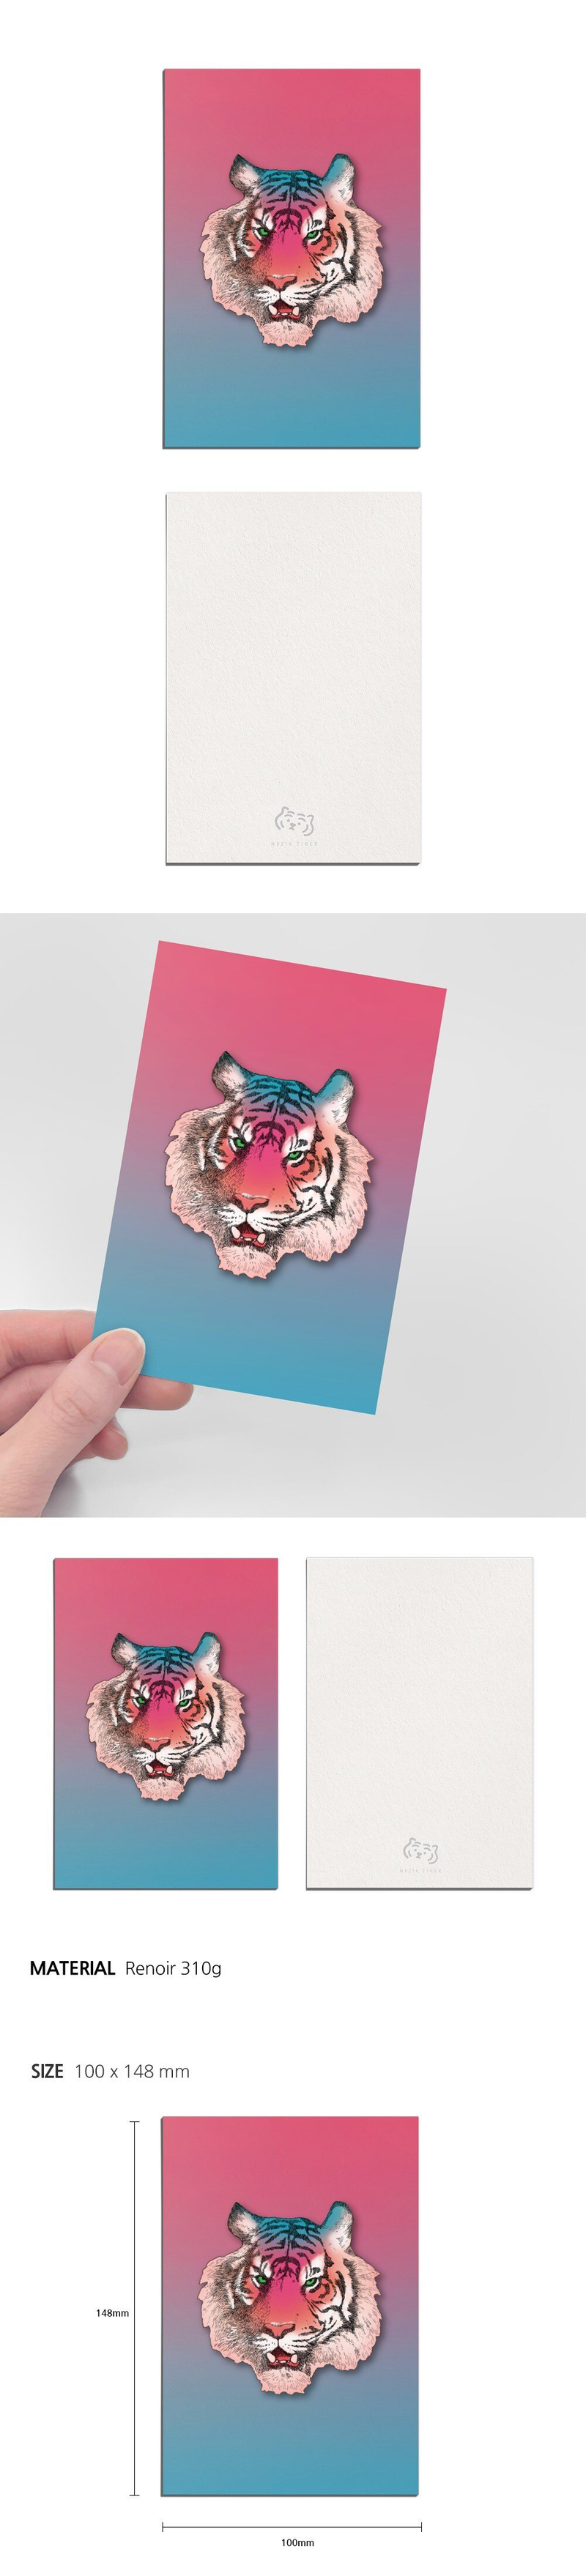 tropical tiger postcard